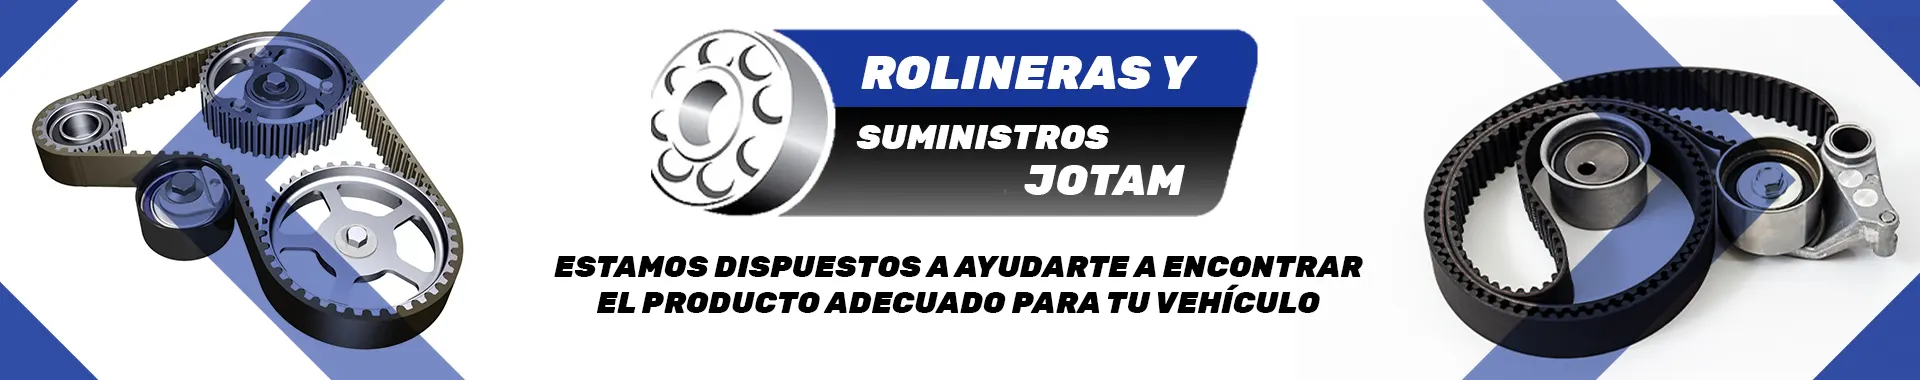 Imagen 4 del perfil de Rolineras y Suministros Jotam